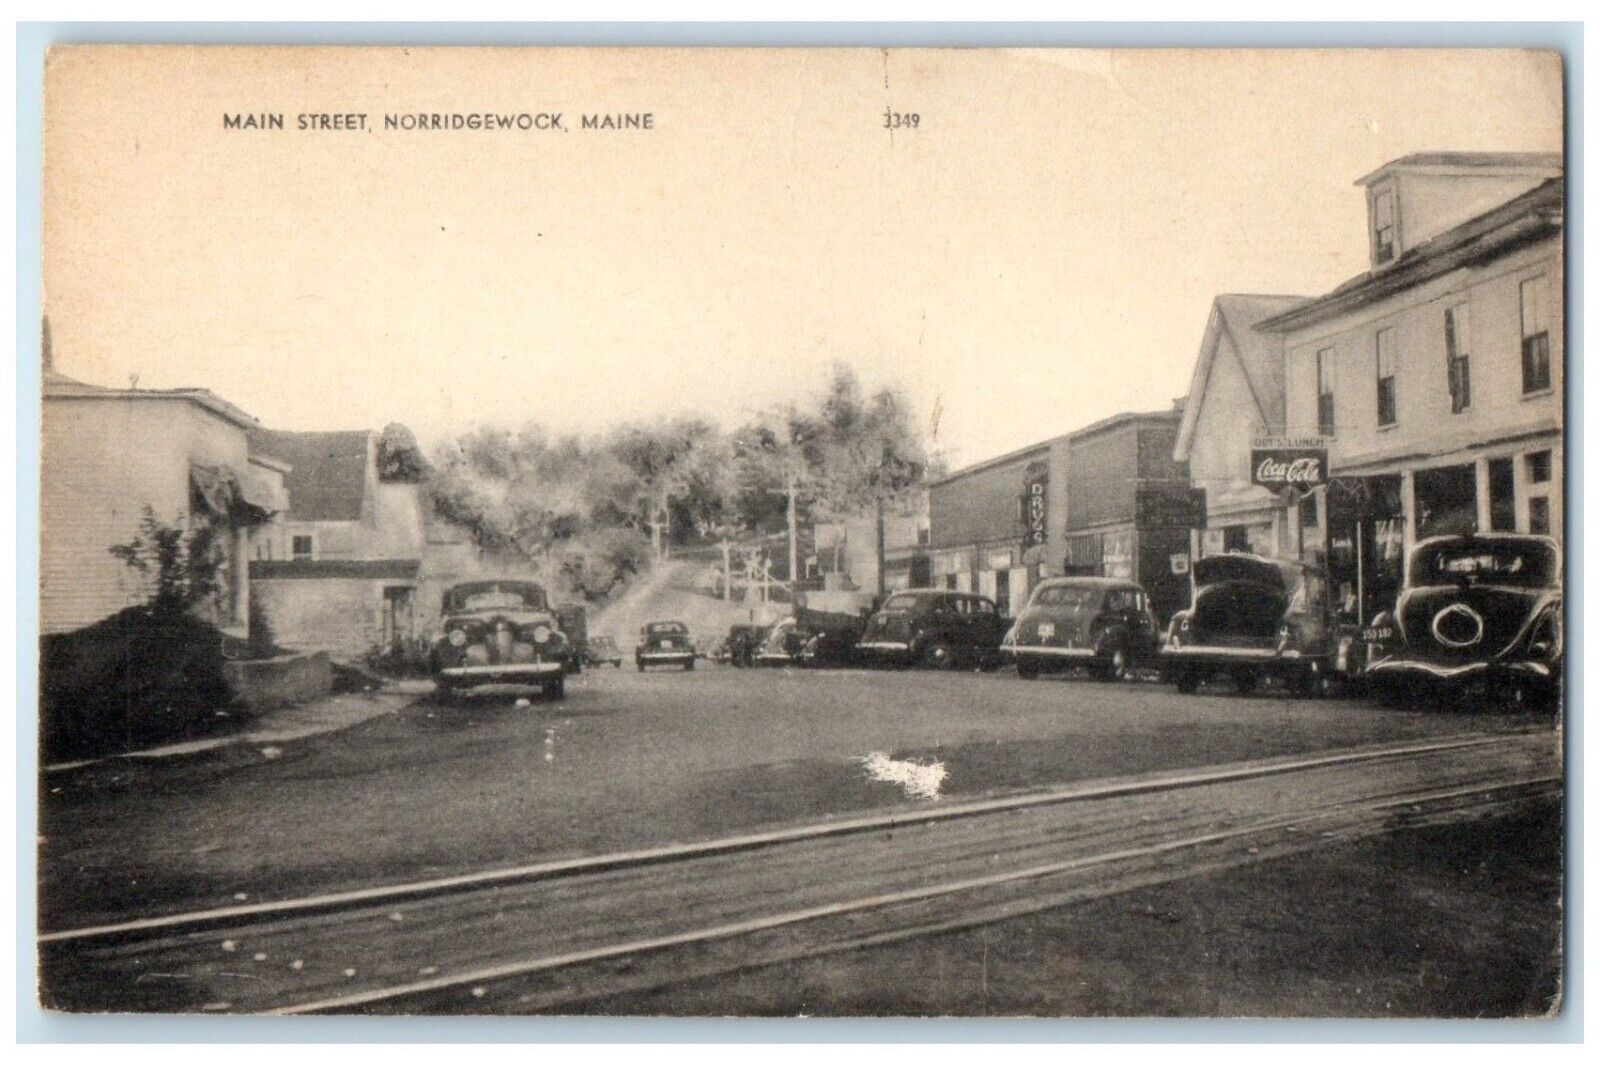 c1940 Main Street Classic Cars Road Norridgewock Maine Vintage Antique Postcard